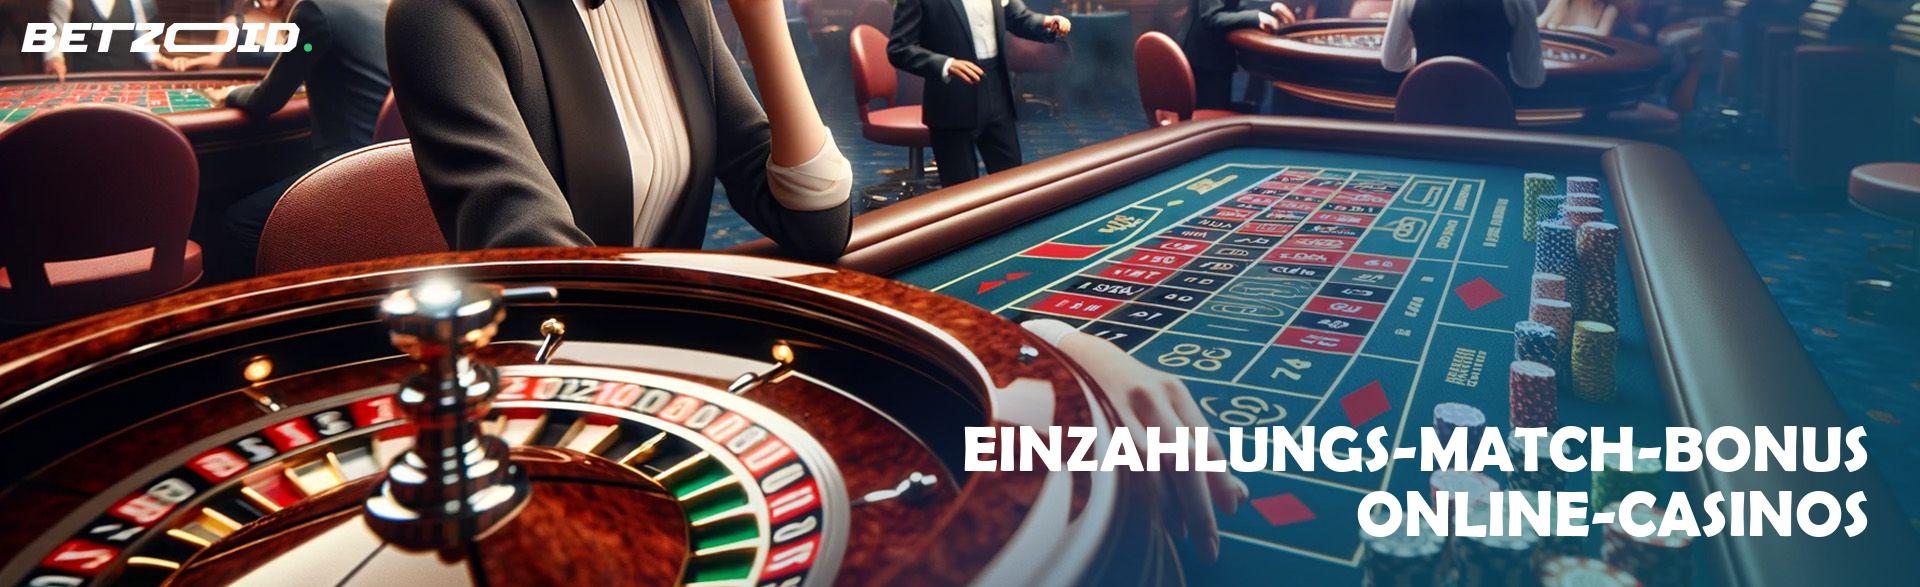 Einzahlungs-Match-Bonus Online-Casinos.